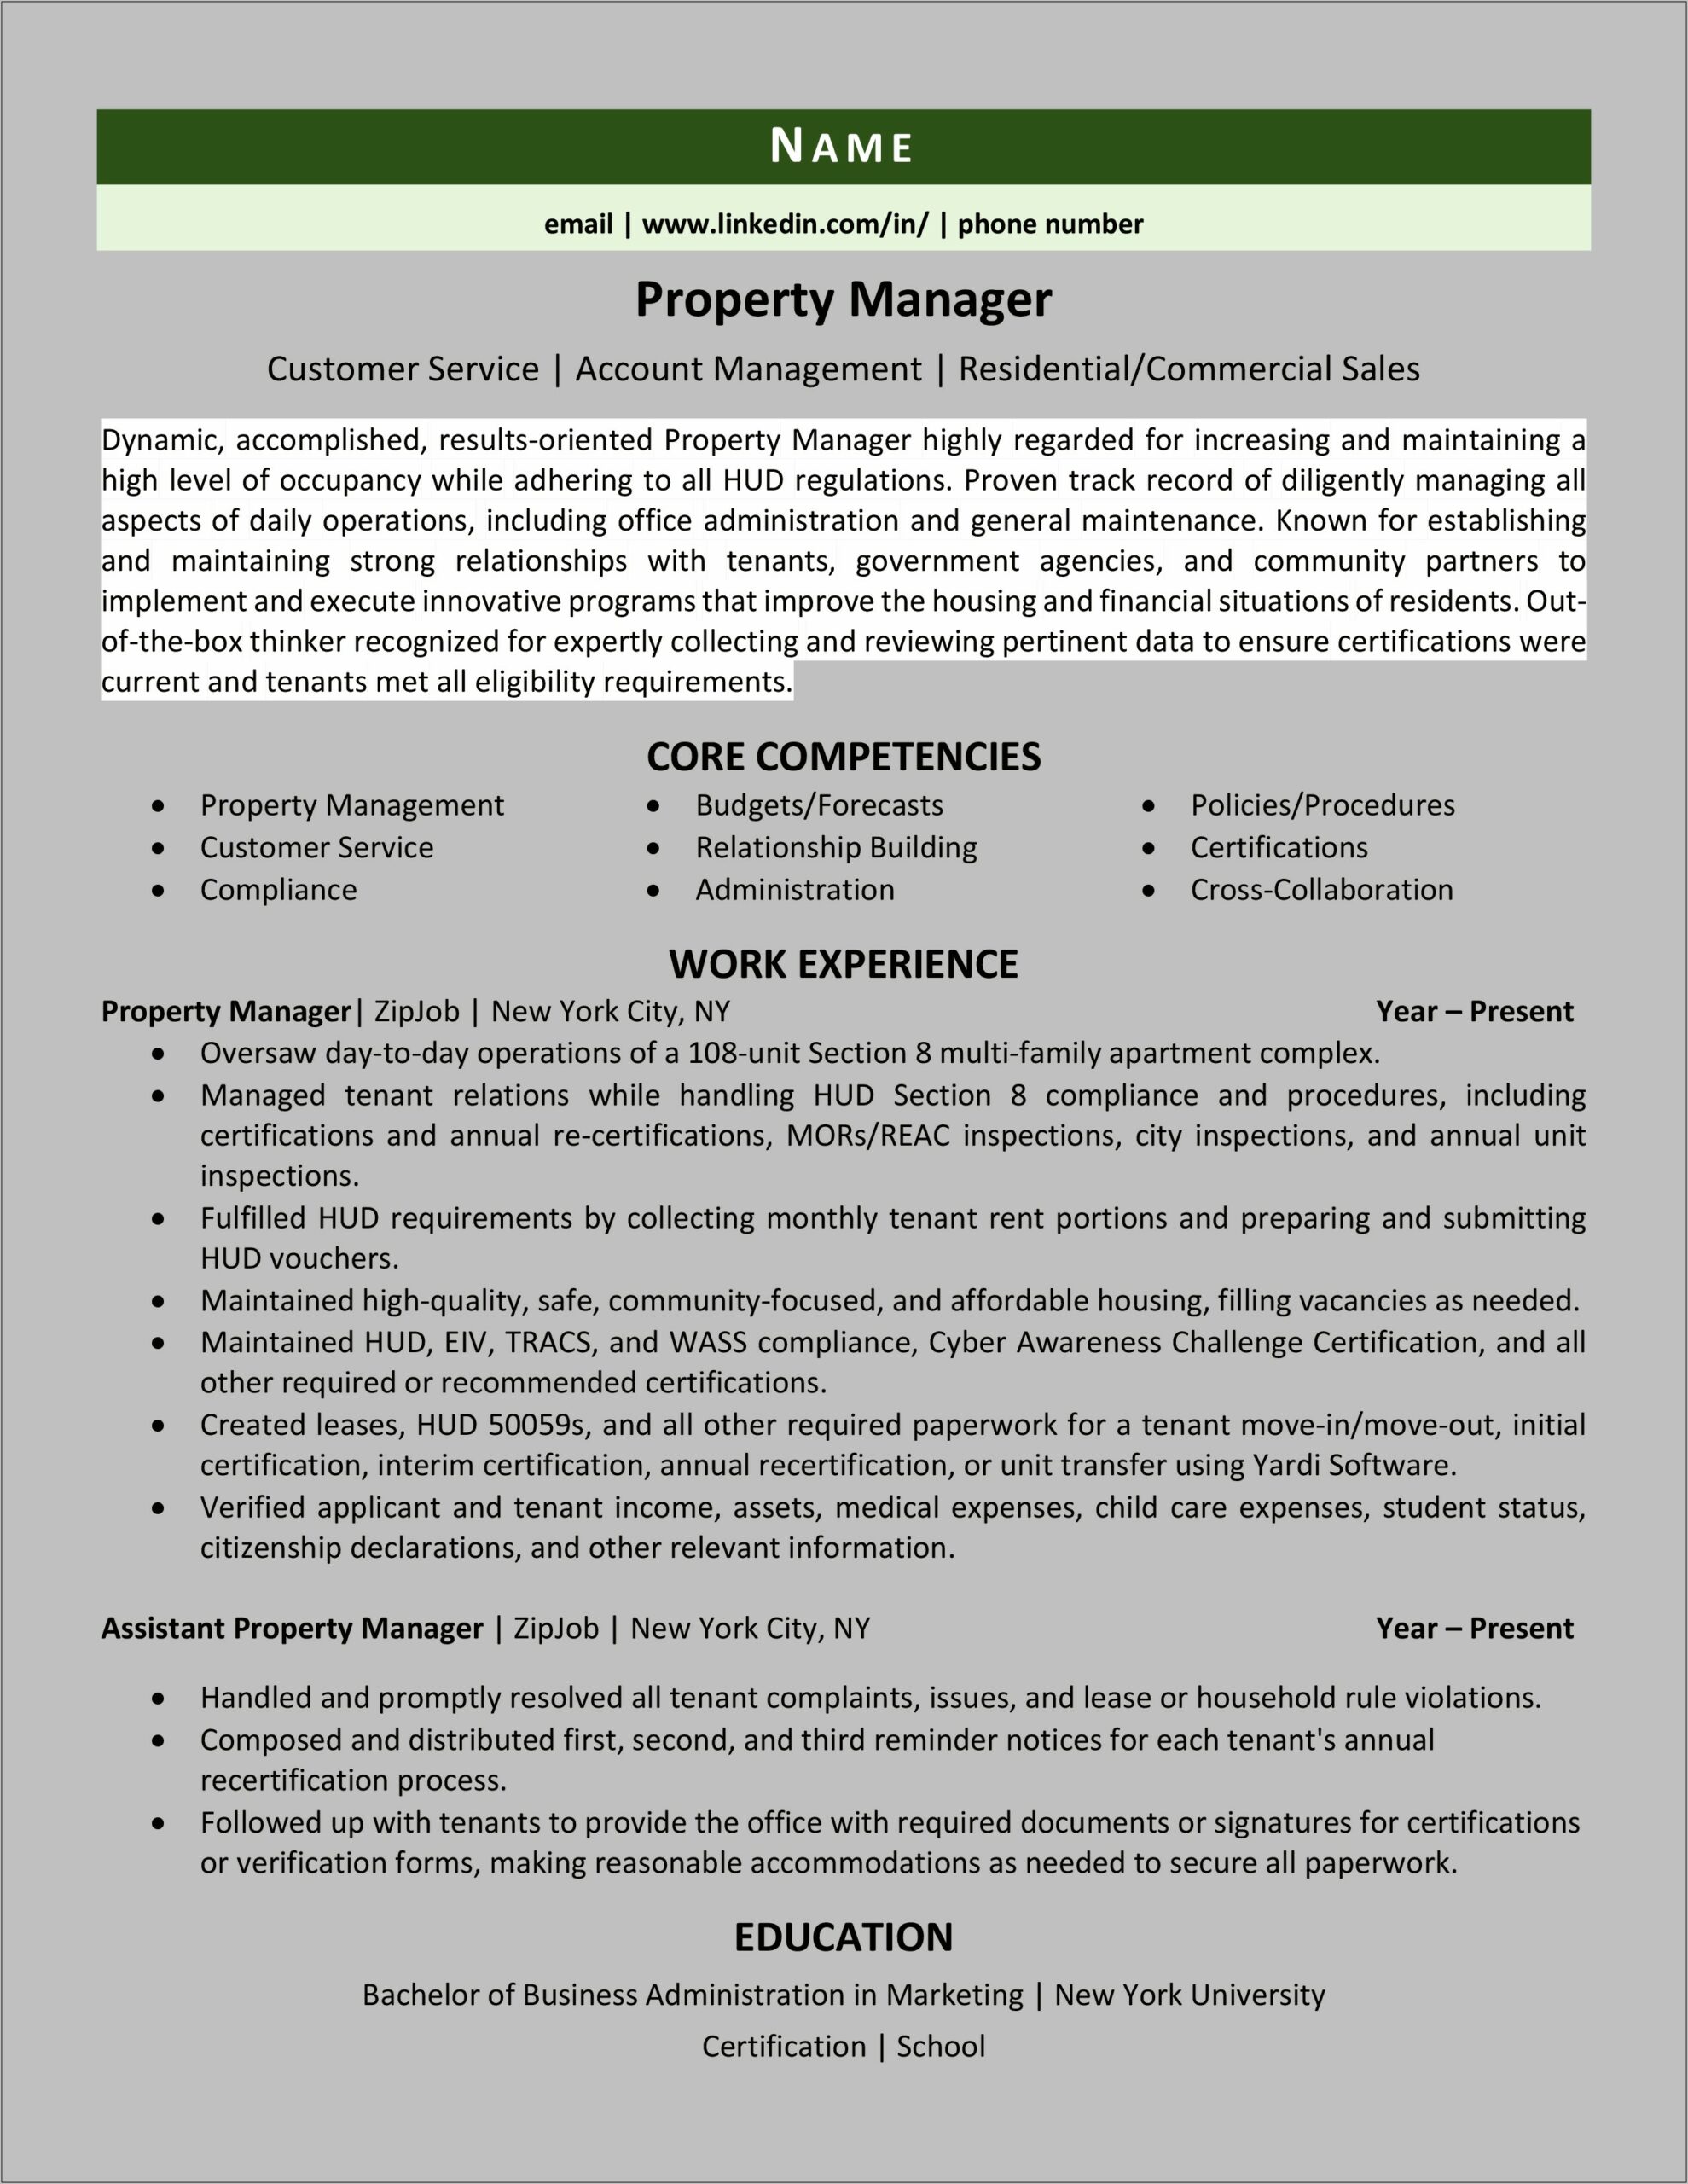 Property Manager Description For Resume